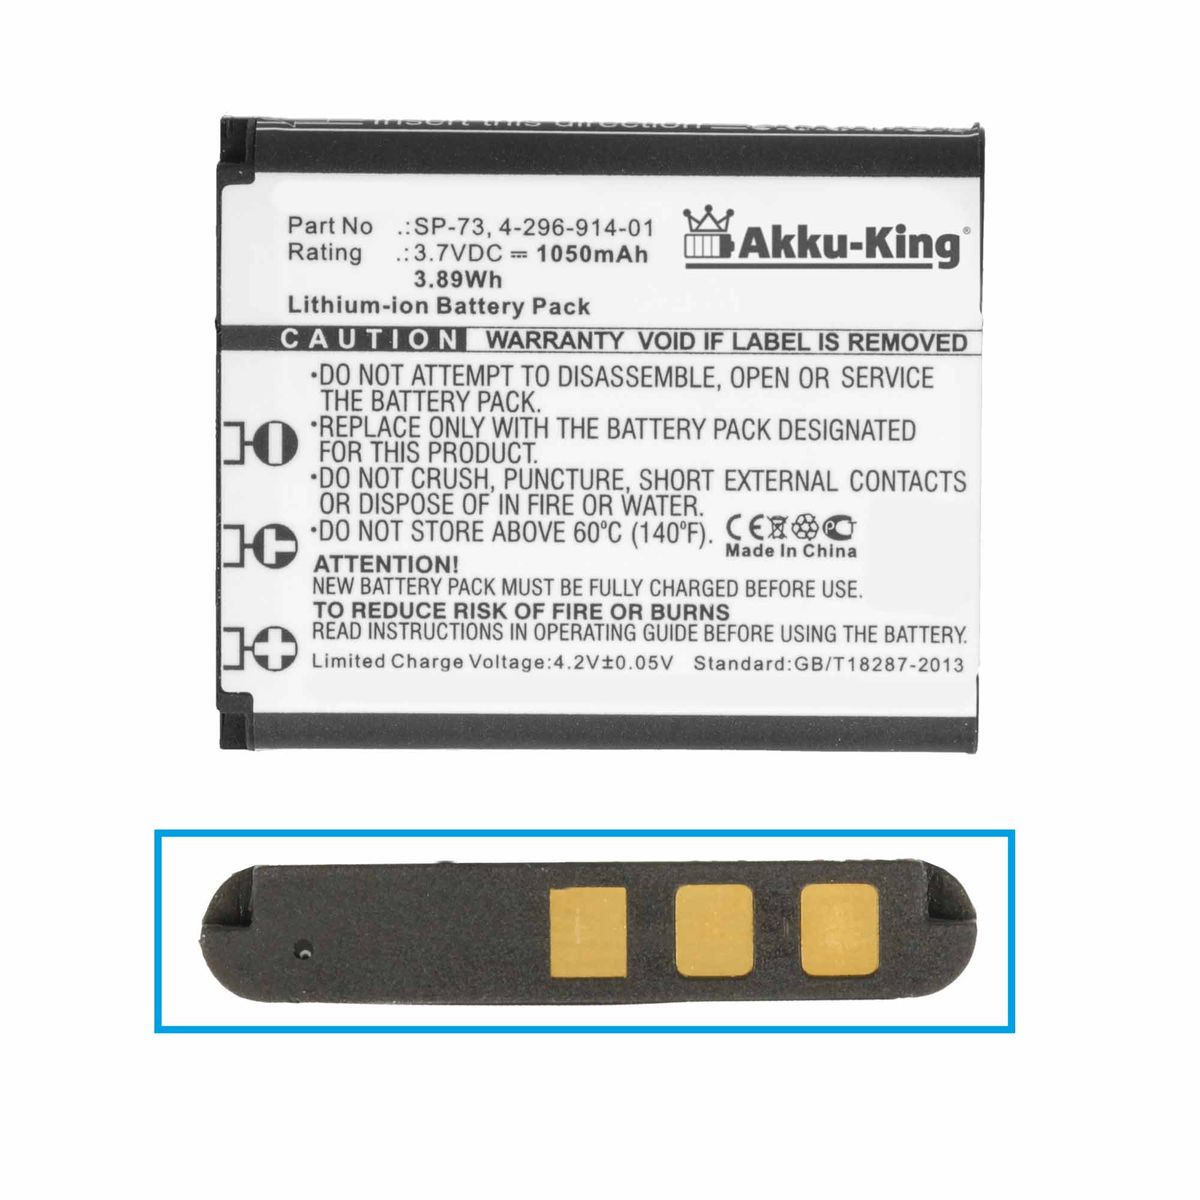 AKKU-KING Akku kompatibel Sony Li-Ion 1050mAh 3.7 mit Volt, SP-73 Geräte-Akku